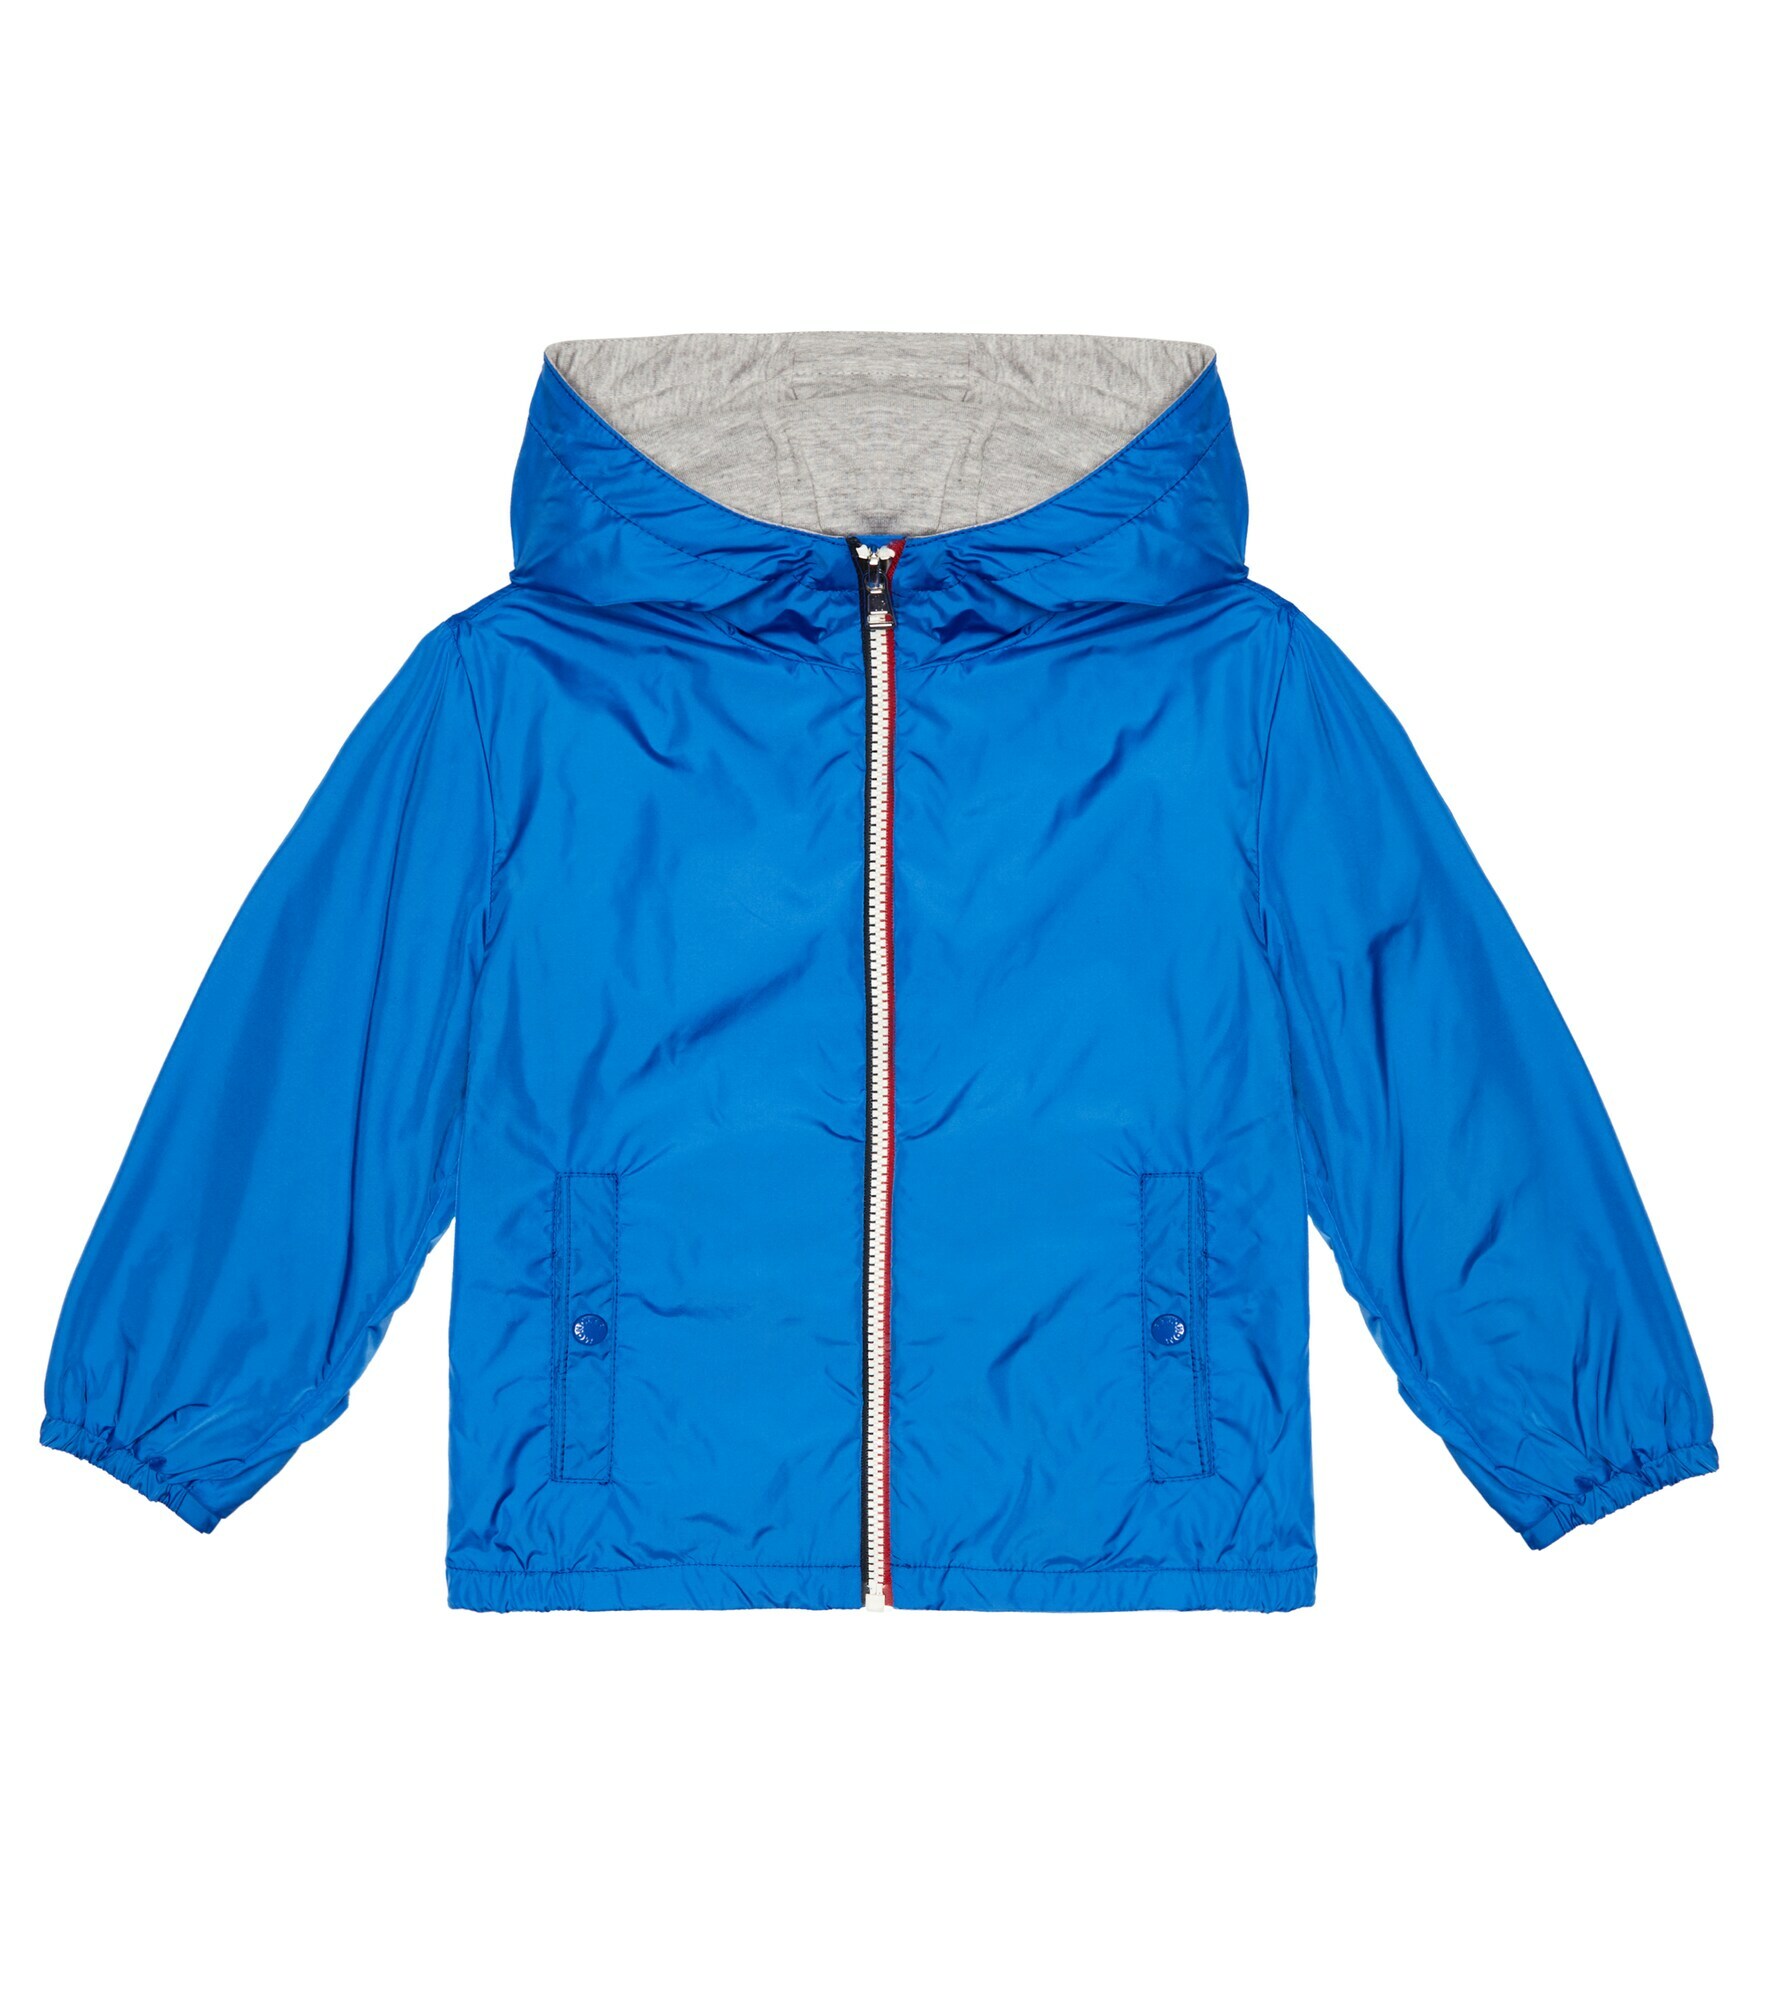 Moncler Enfant - New Urville jacket Moncler Enfant